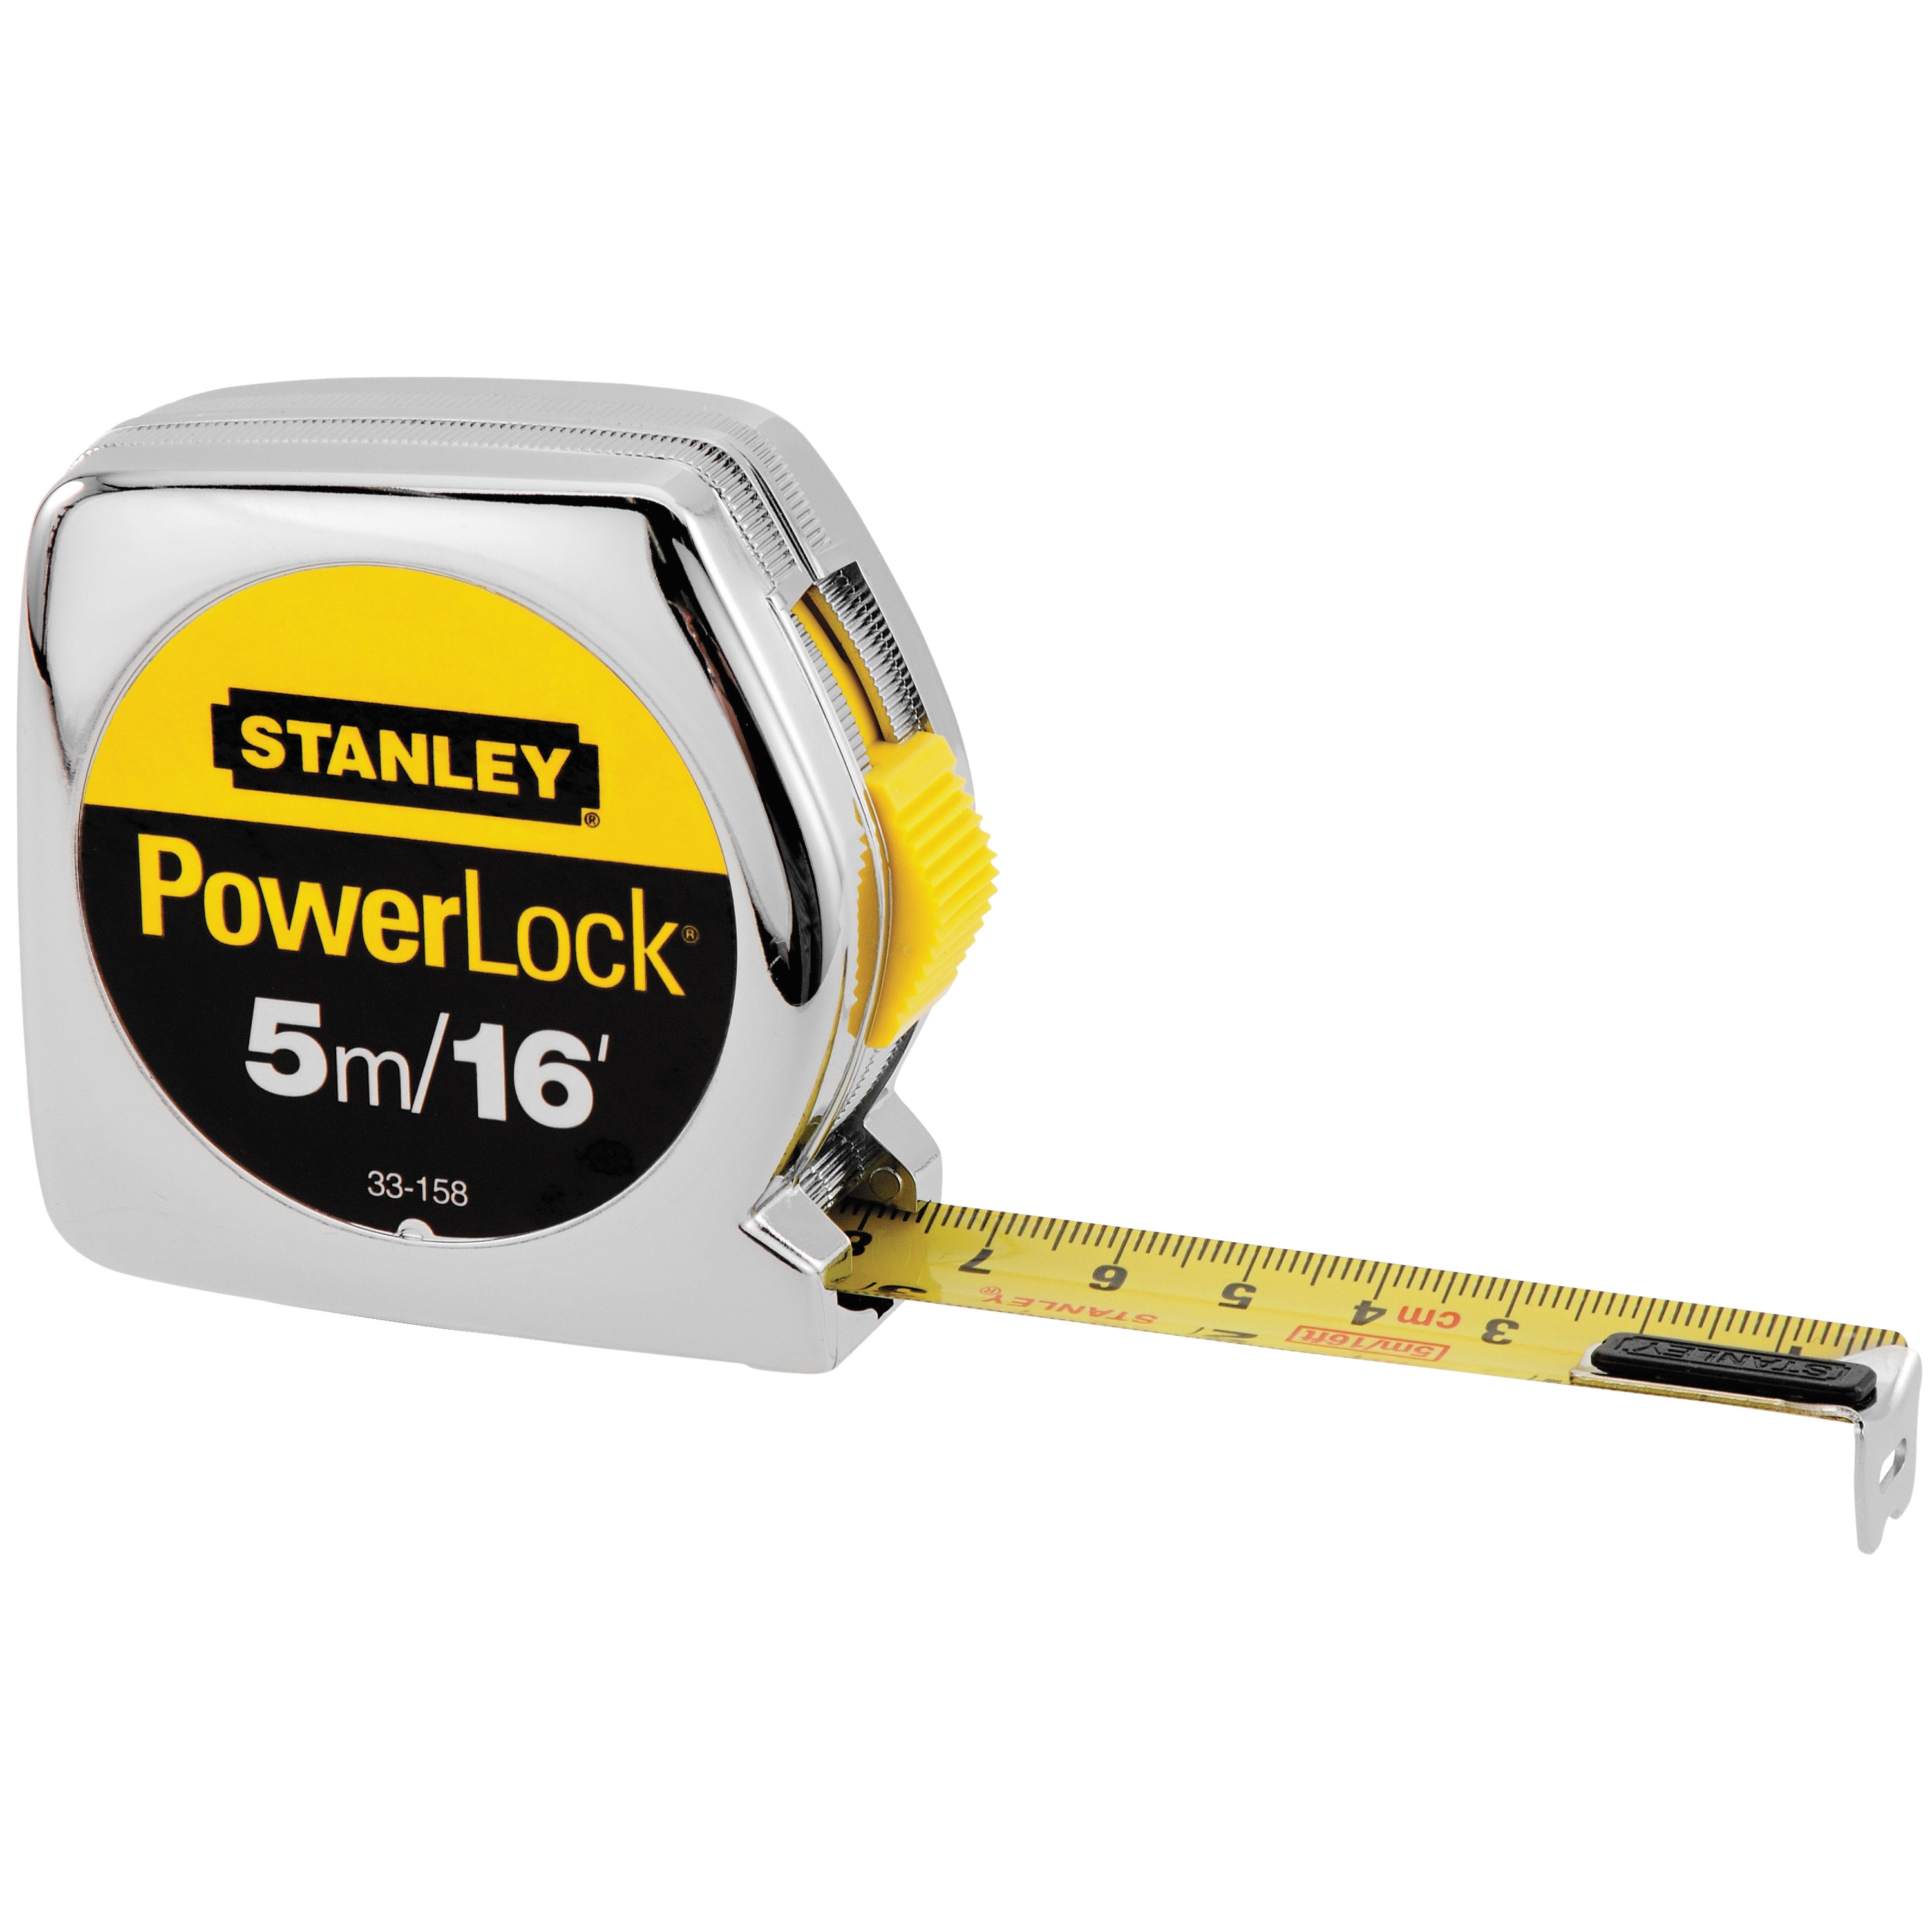 Stanley Tools - 5m16 ft PowerLock Tape Measure - 33-158